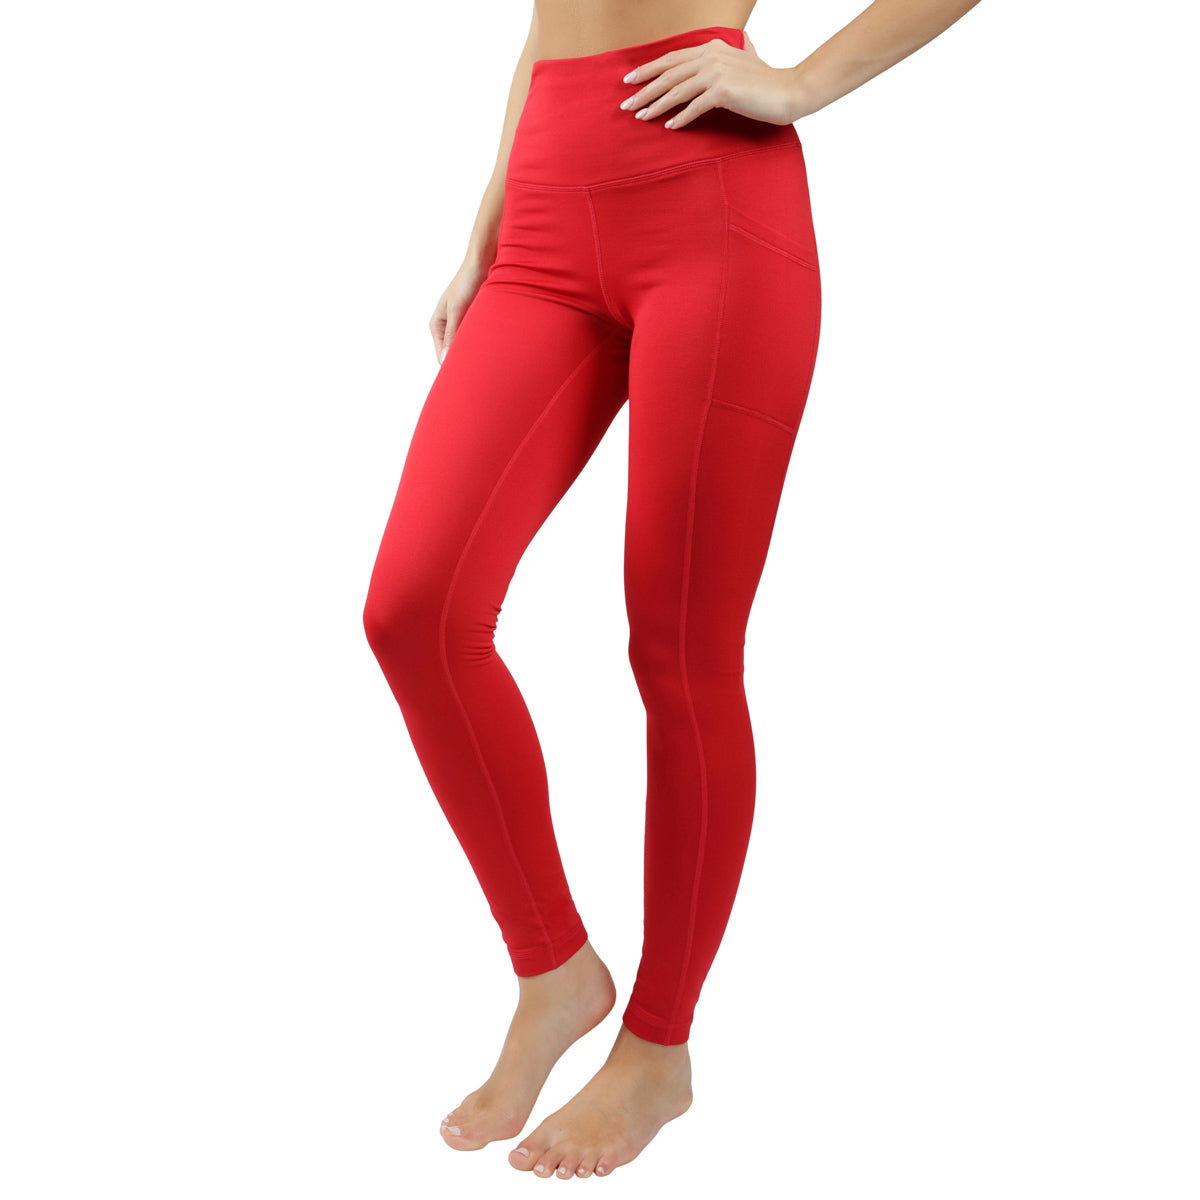 90 Degree By Reflex - Women's Polarflex Fleece Lined High Waist Legging -  Earthen Red - X Small : Target